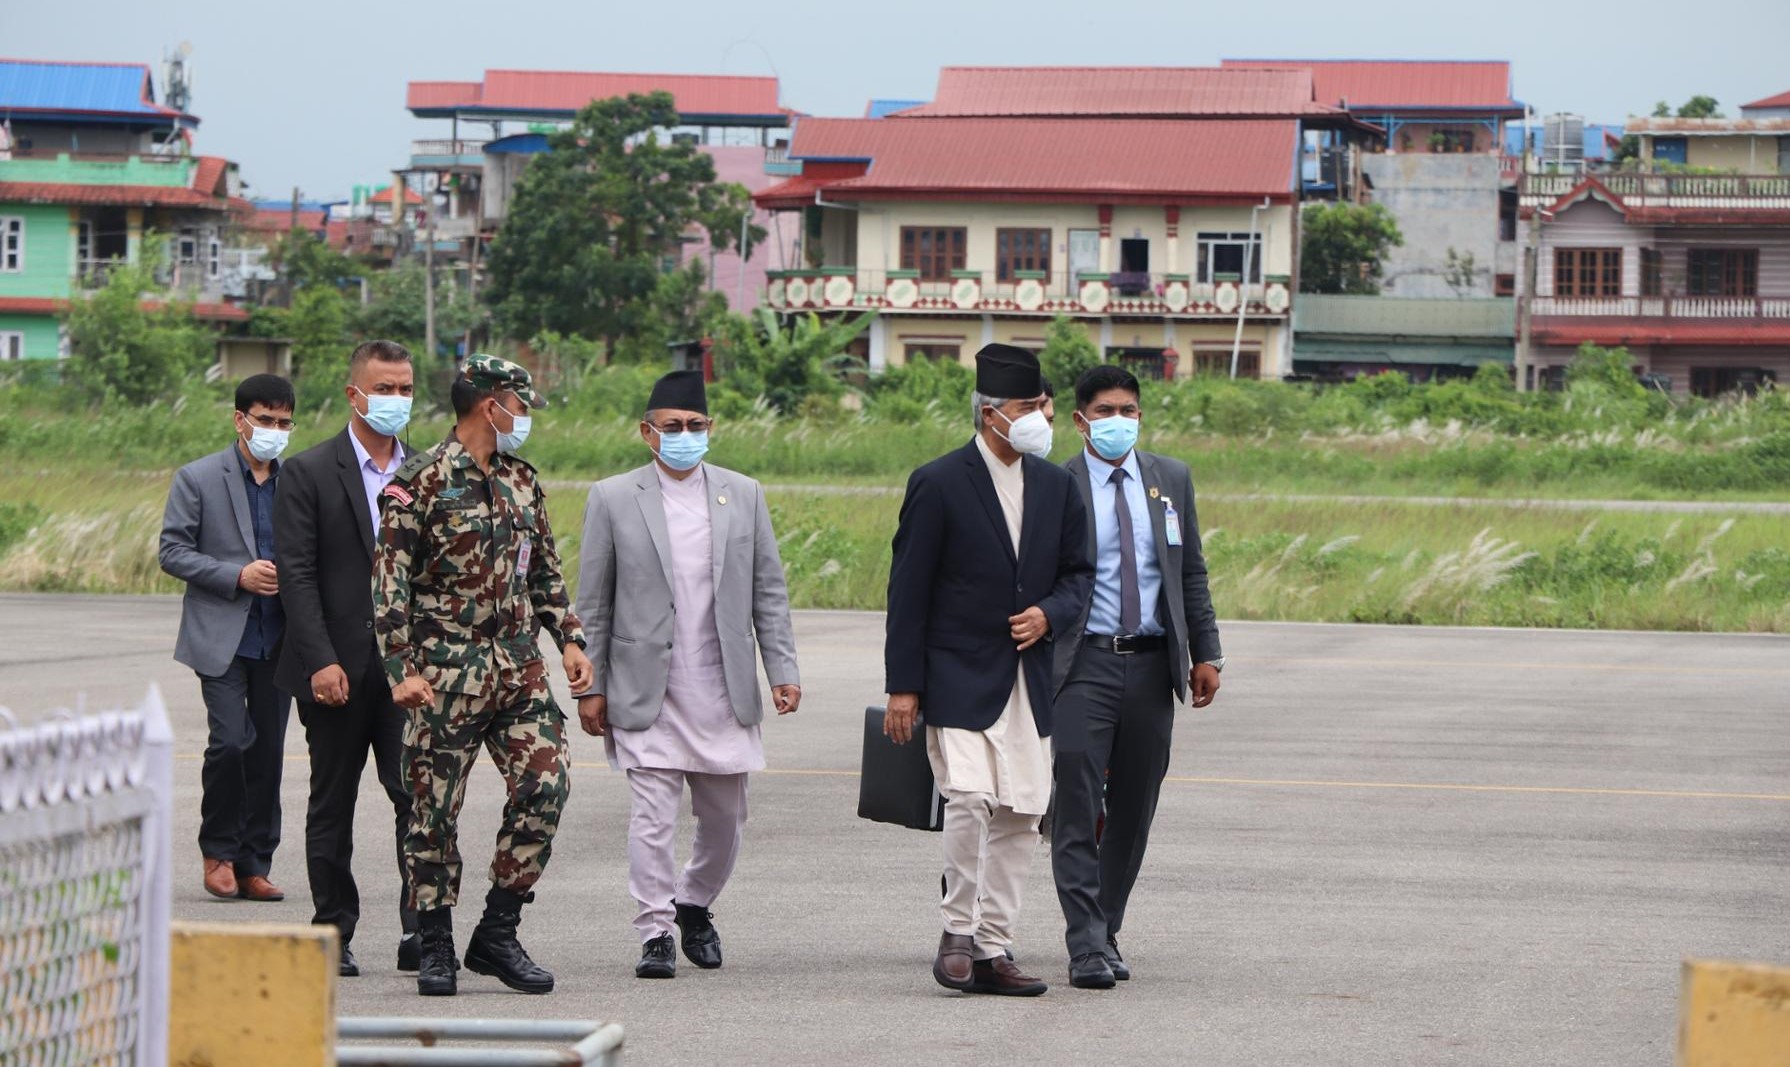 PM Deuba arrives in Chitwan